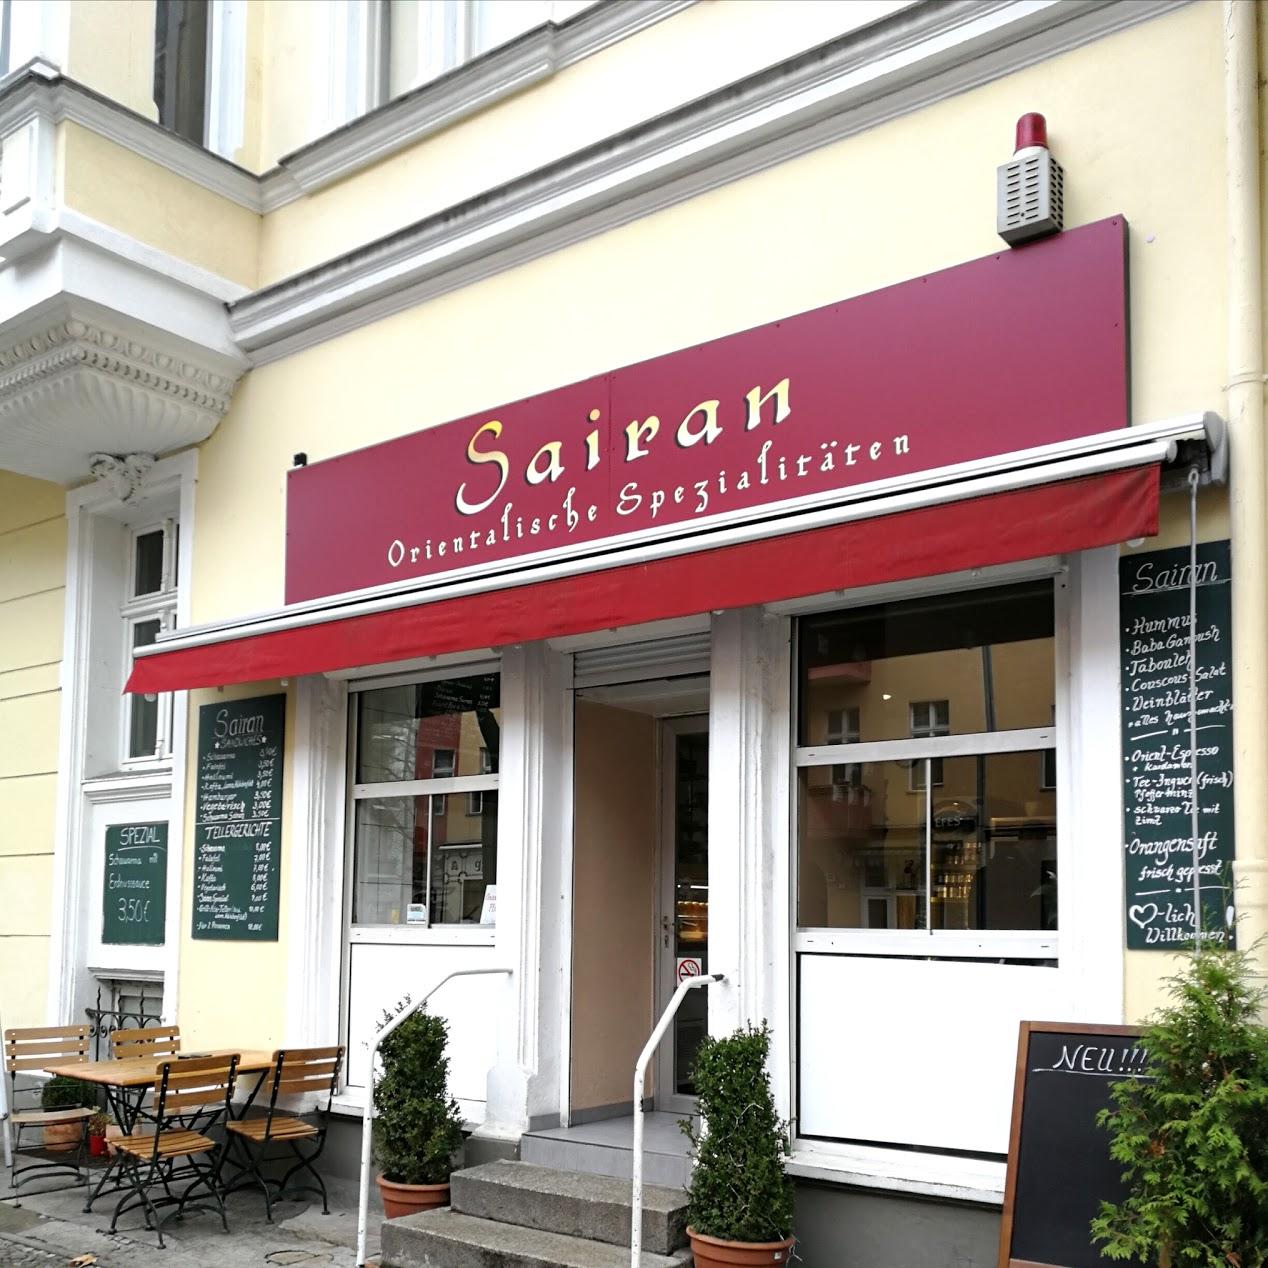 Restaurant "Sairan orientalische Spezialitäten Berlin" in Berlin